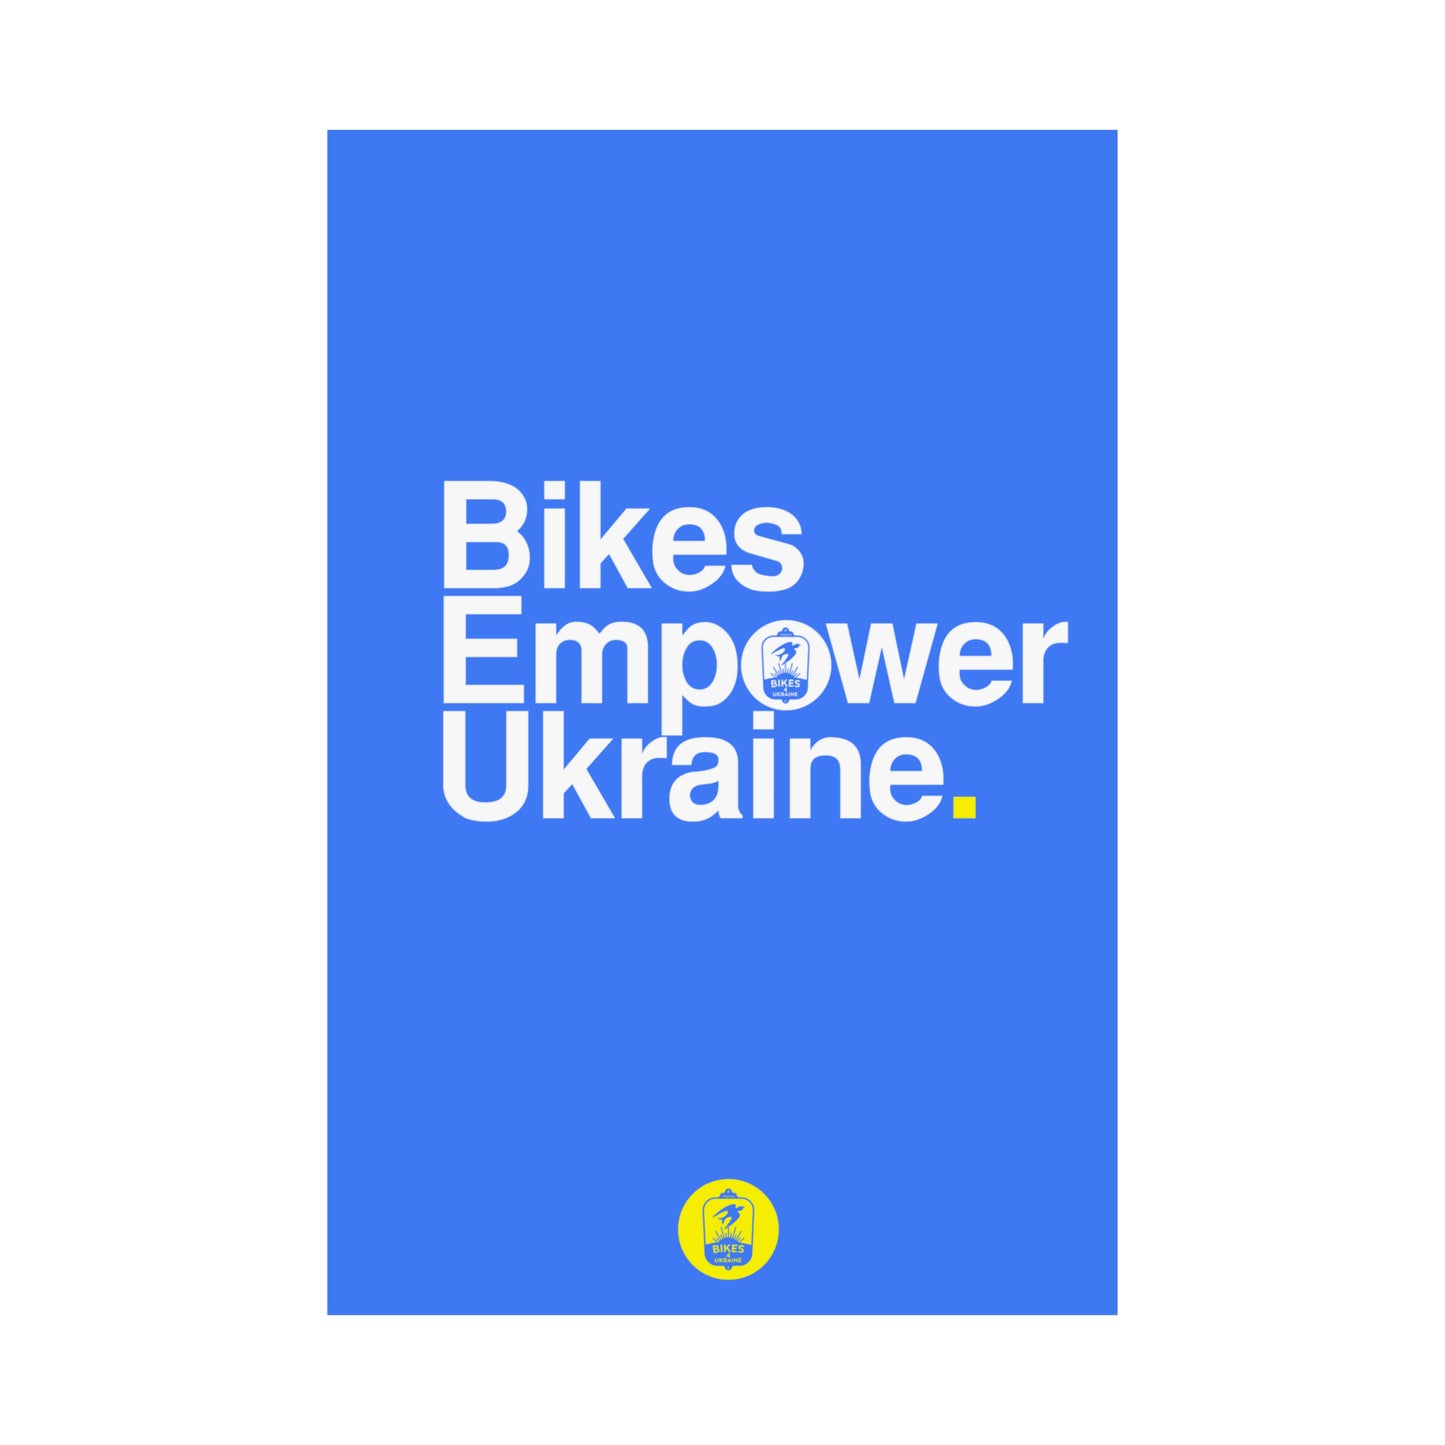 Bikes Empower Ukraine - Poster from Bikes4Ukraine.org